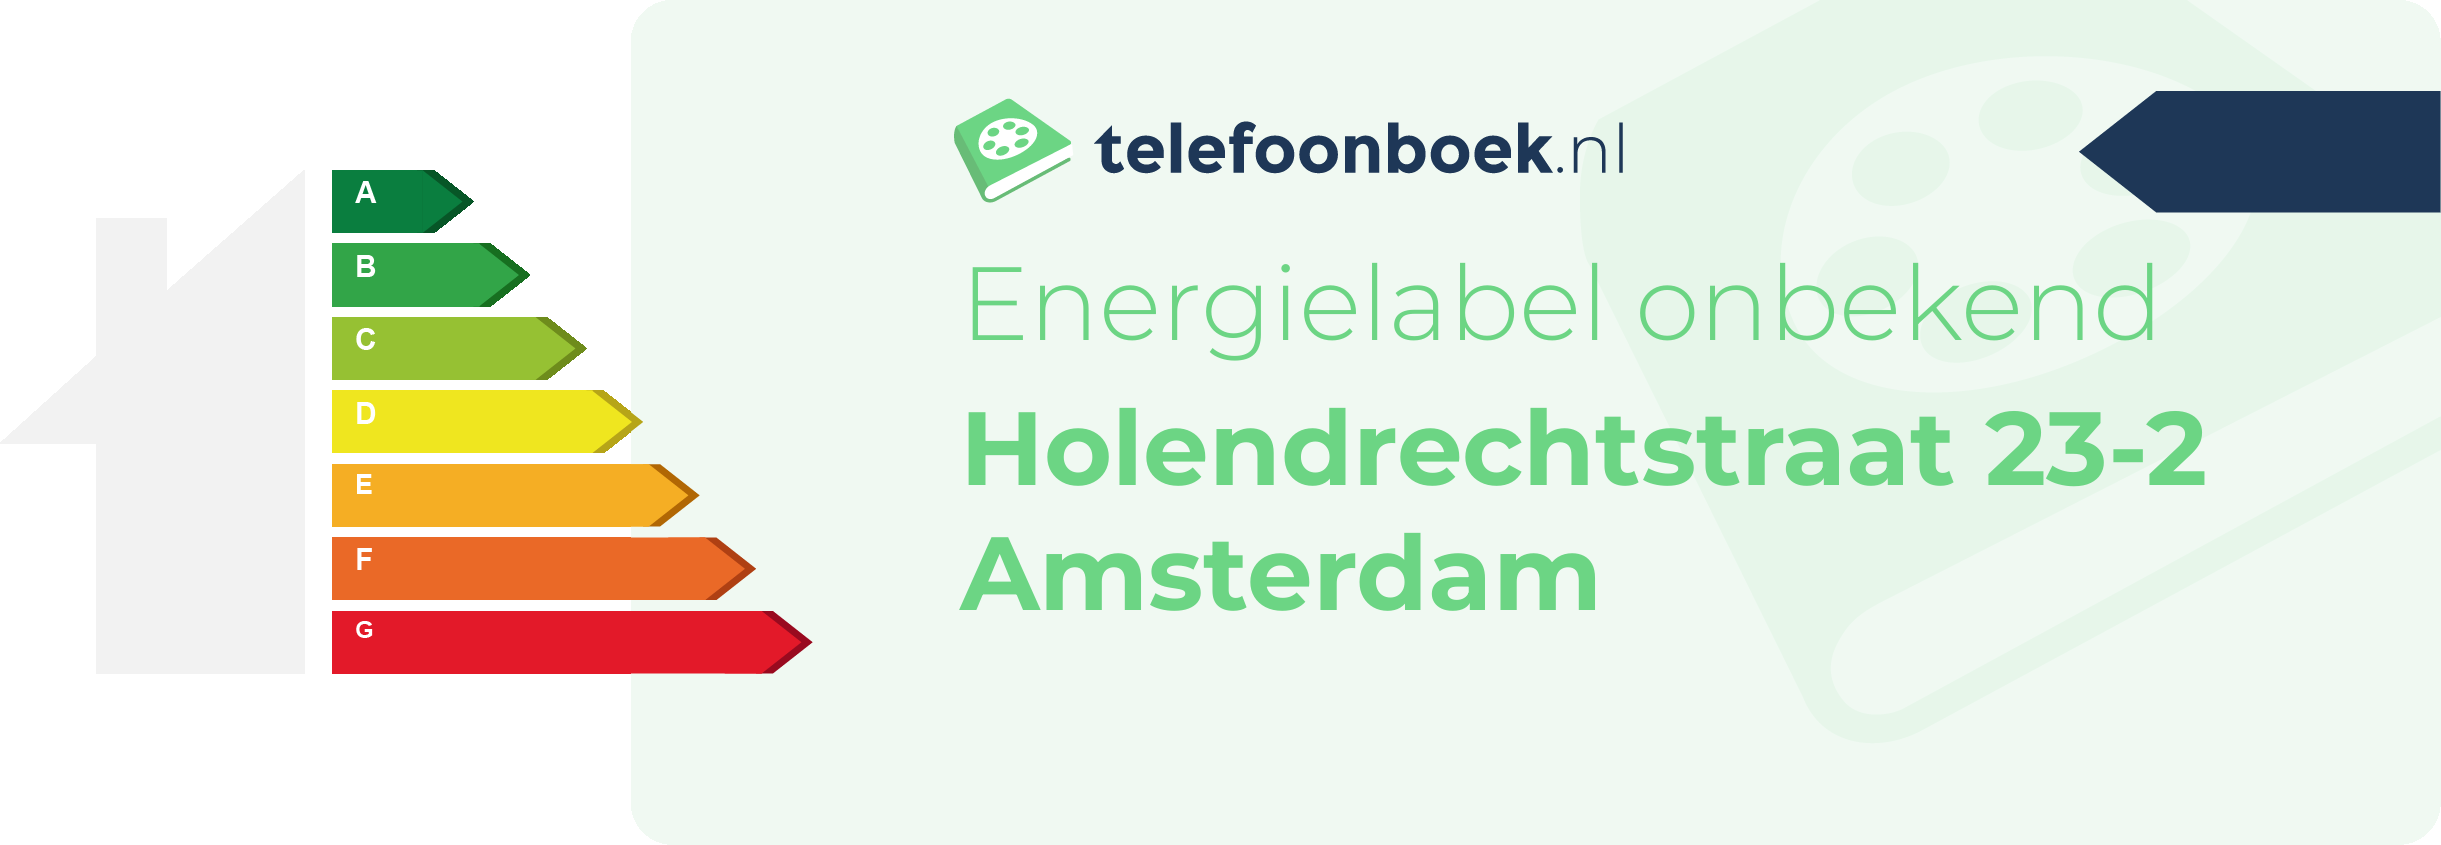 Energielabel Holendrechtstraat 23-2 Amsterdam